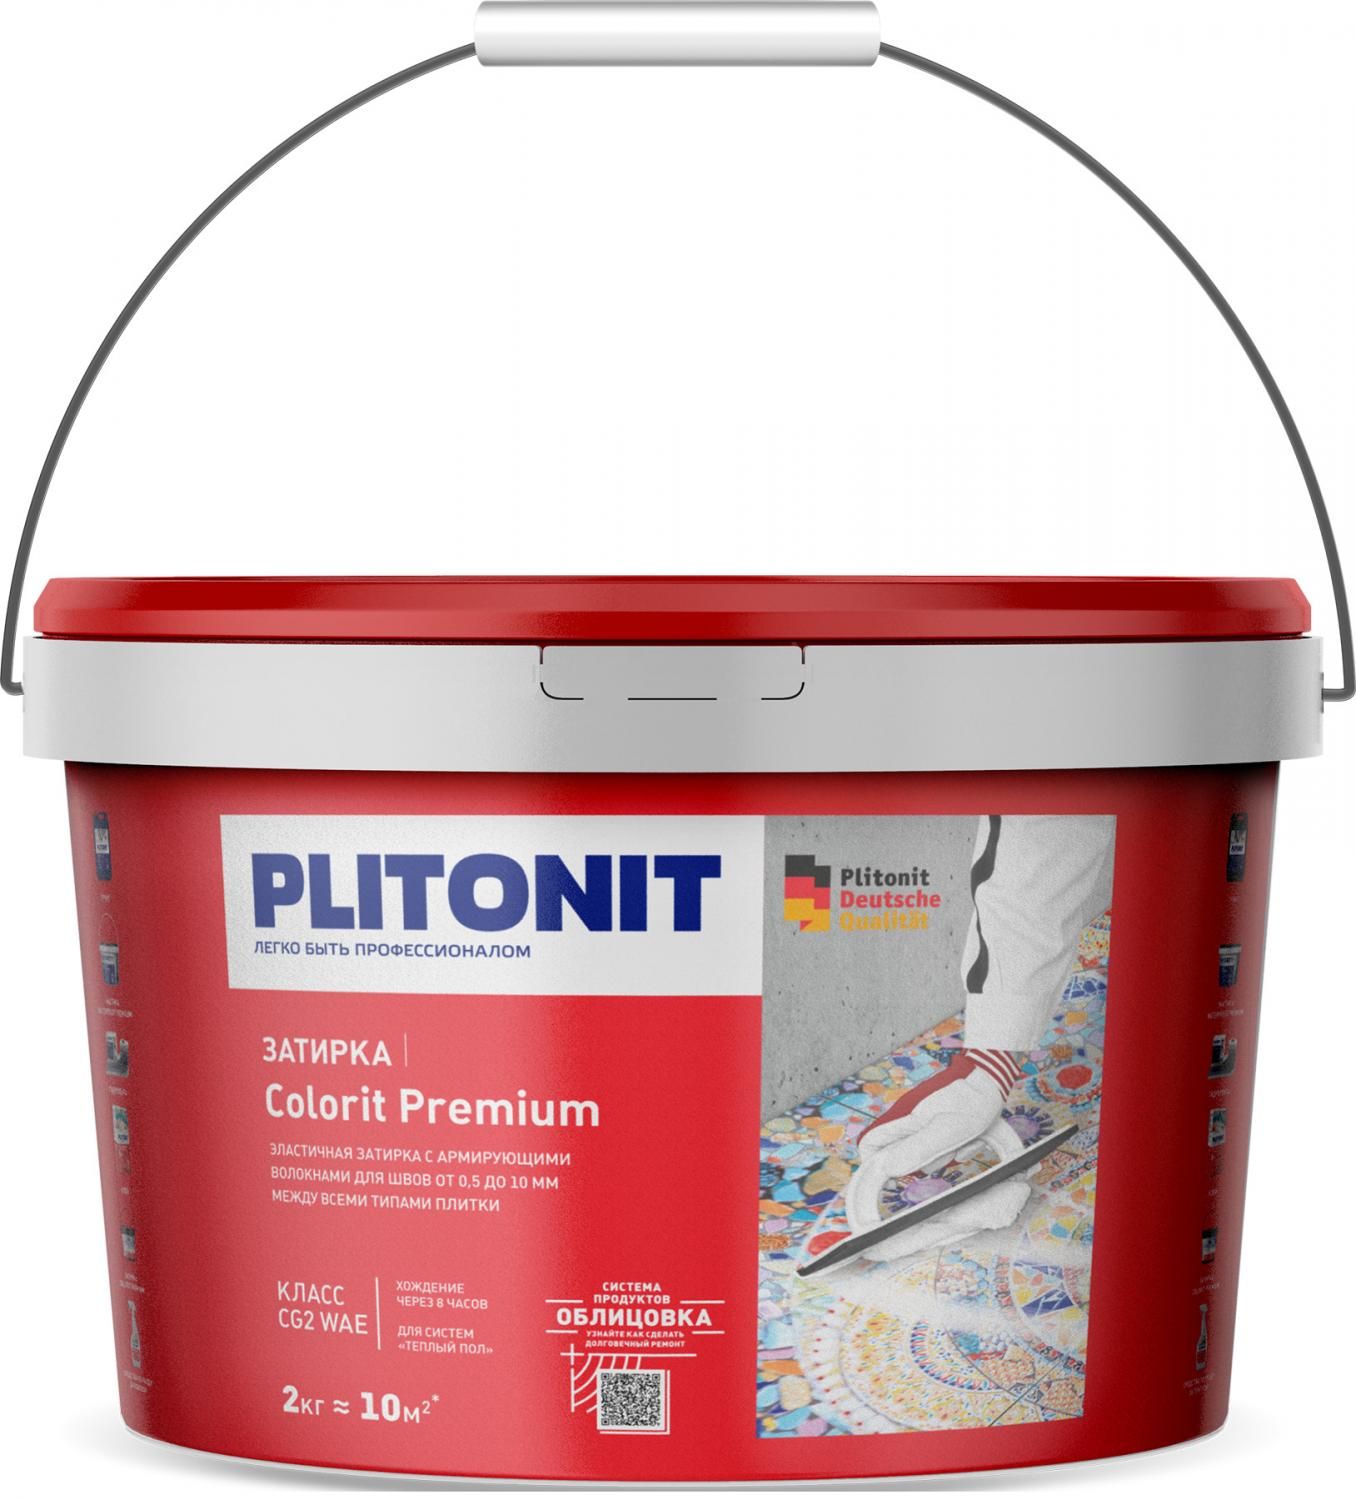 Купить Затирка Plitonit Colorit Premium светло-голубая 2 кг цементная